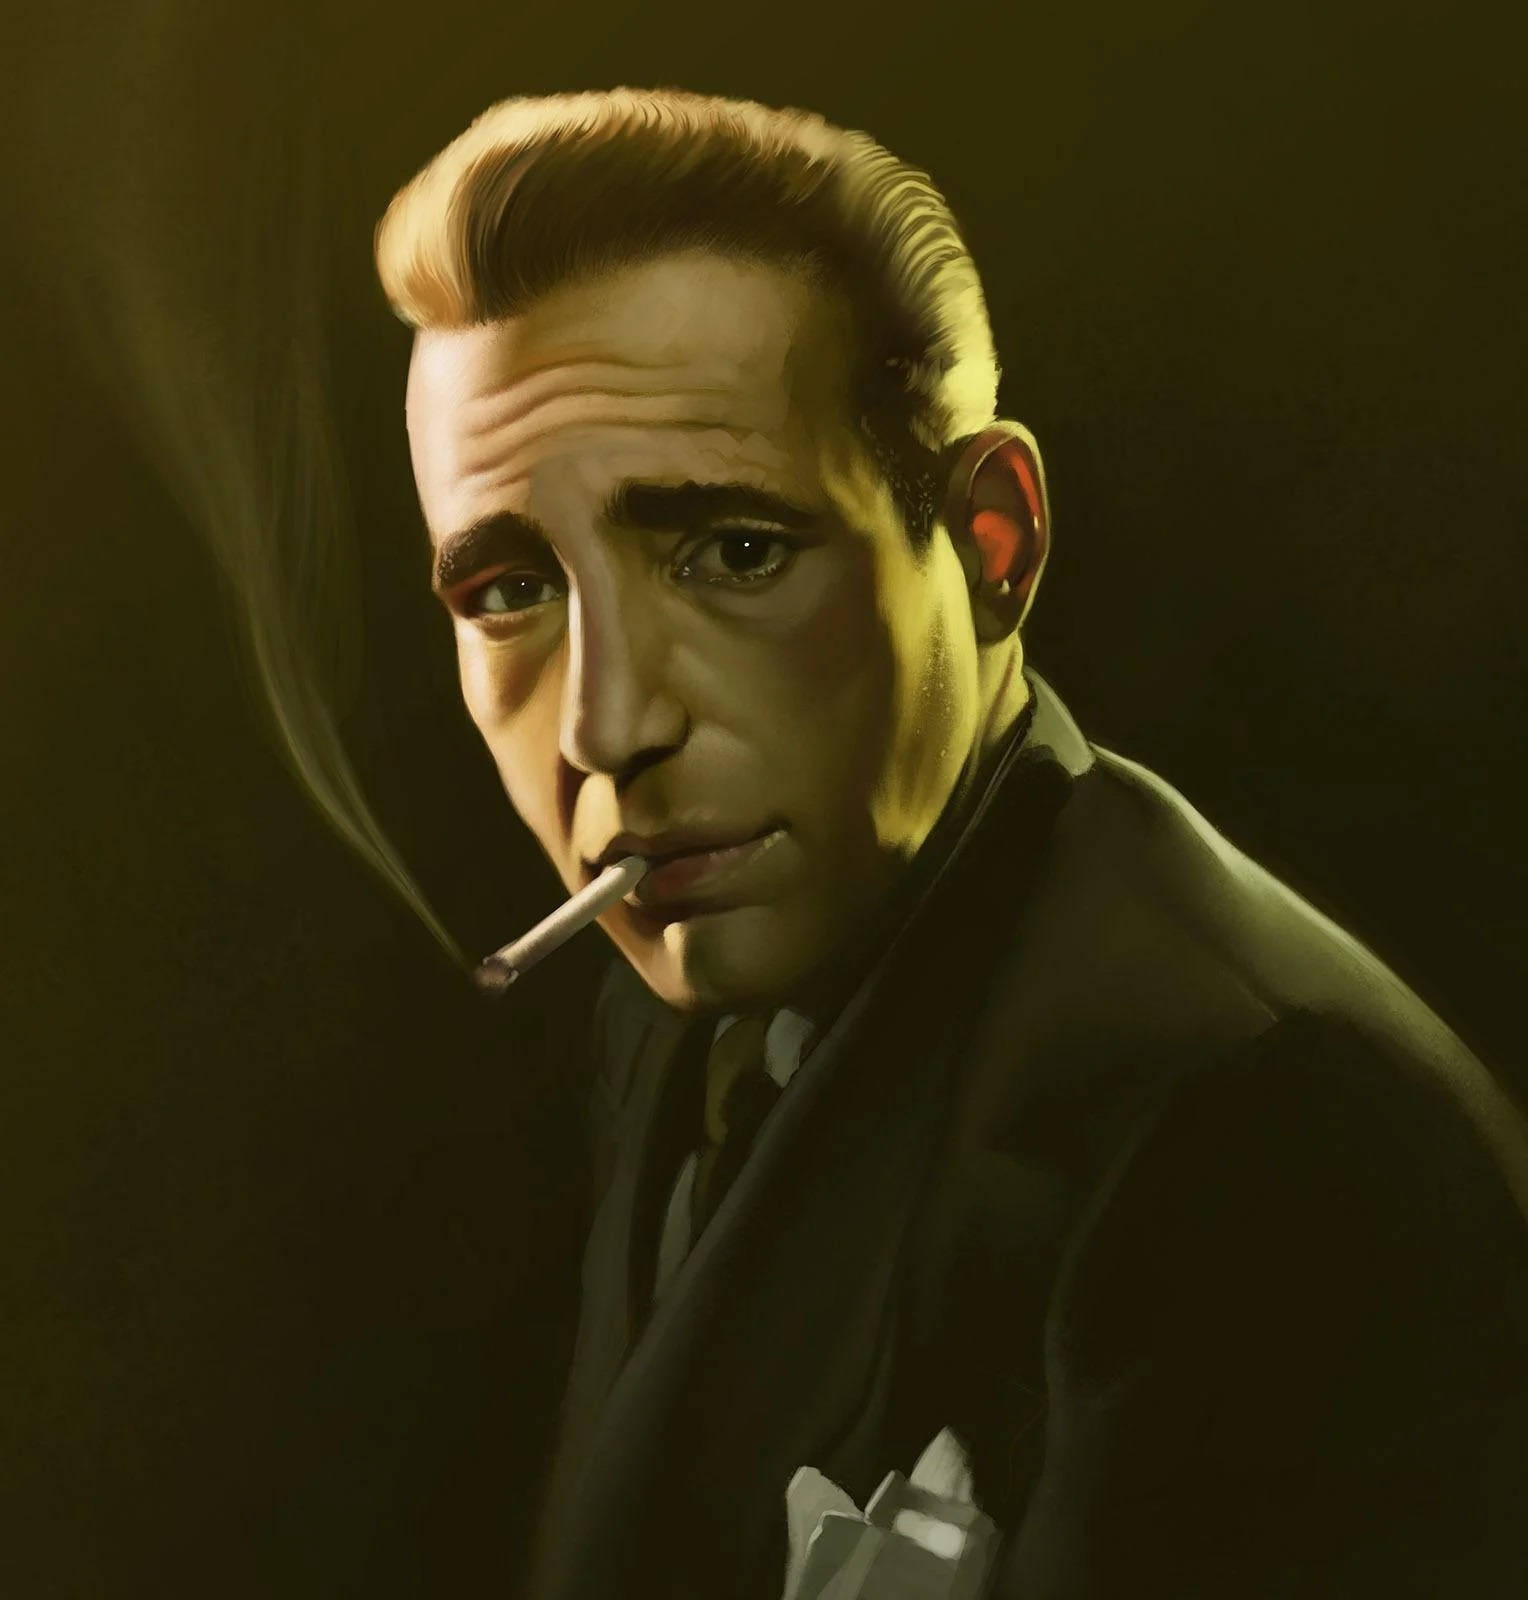 Rauchenderhumphrey Bogart Wallpaper